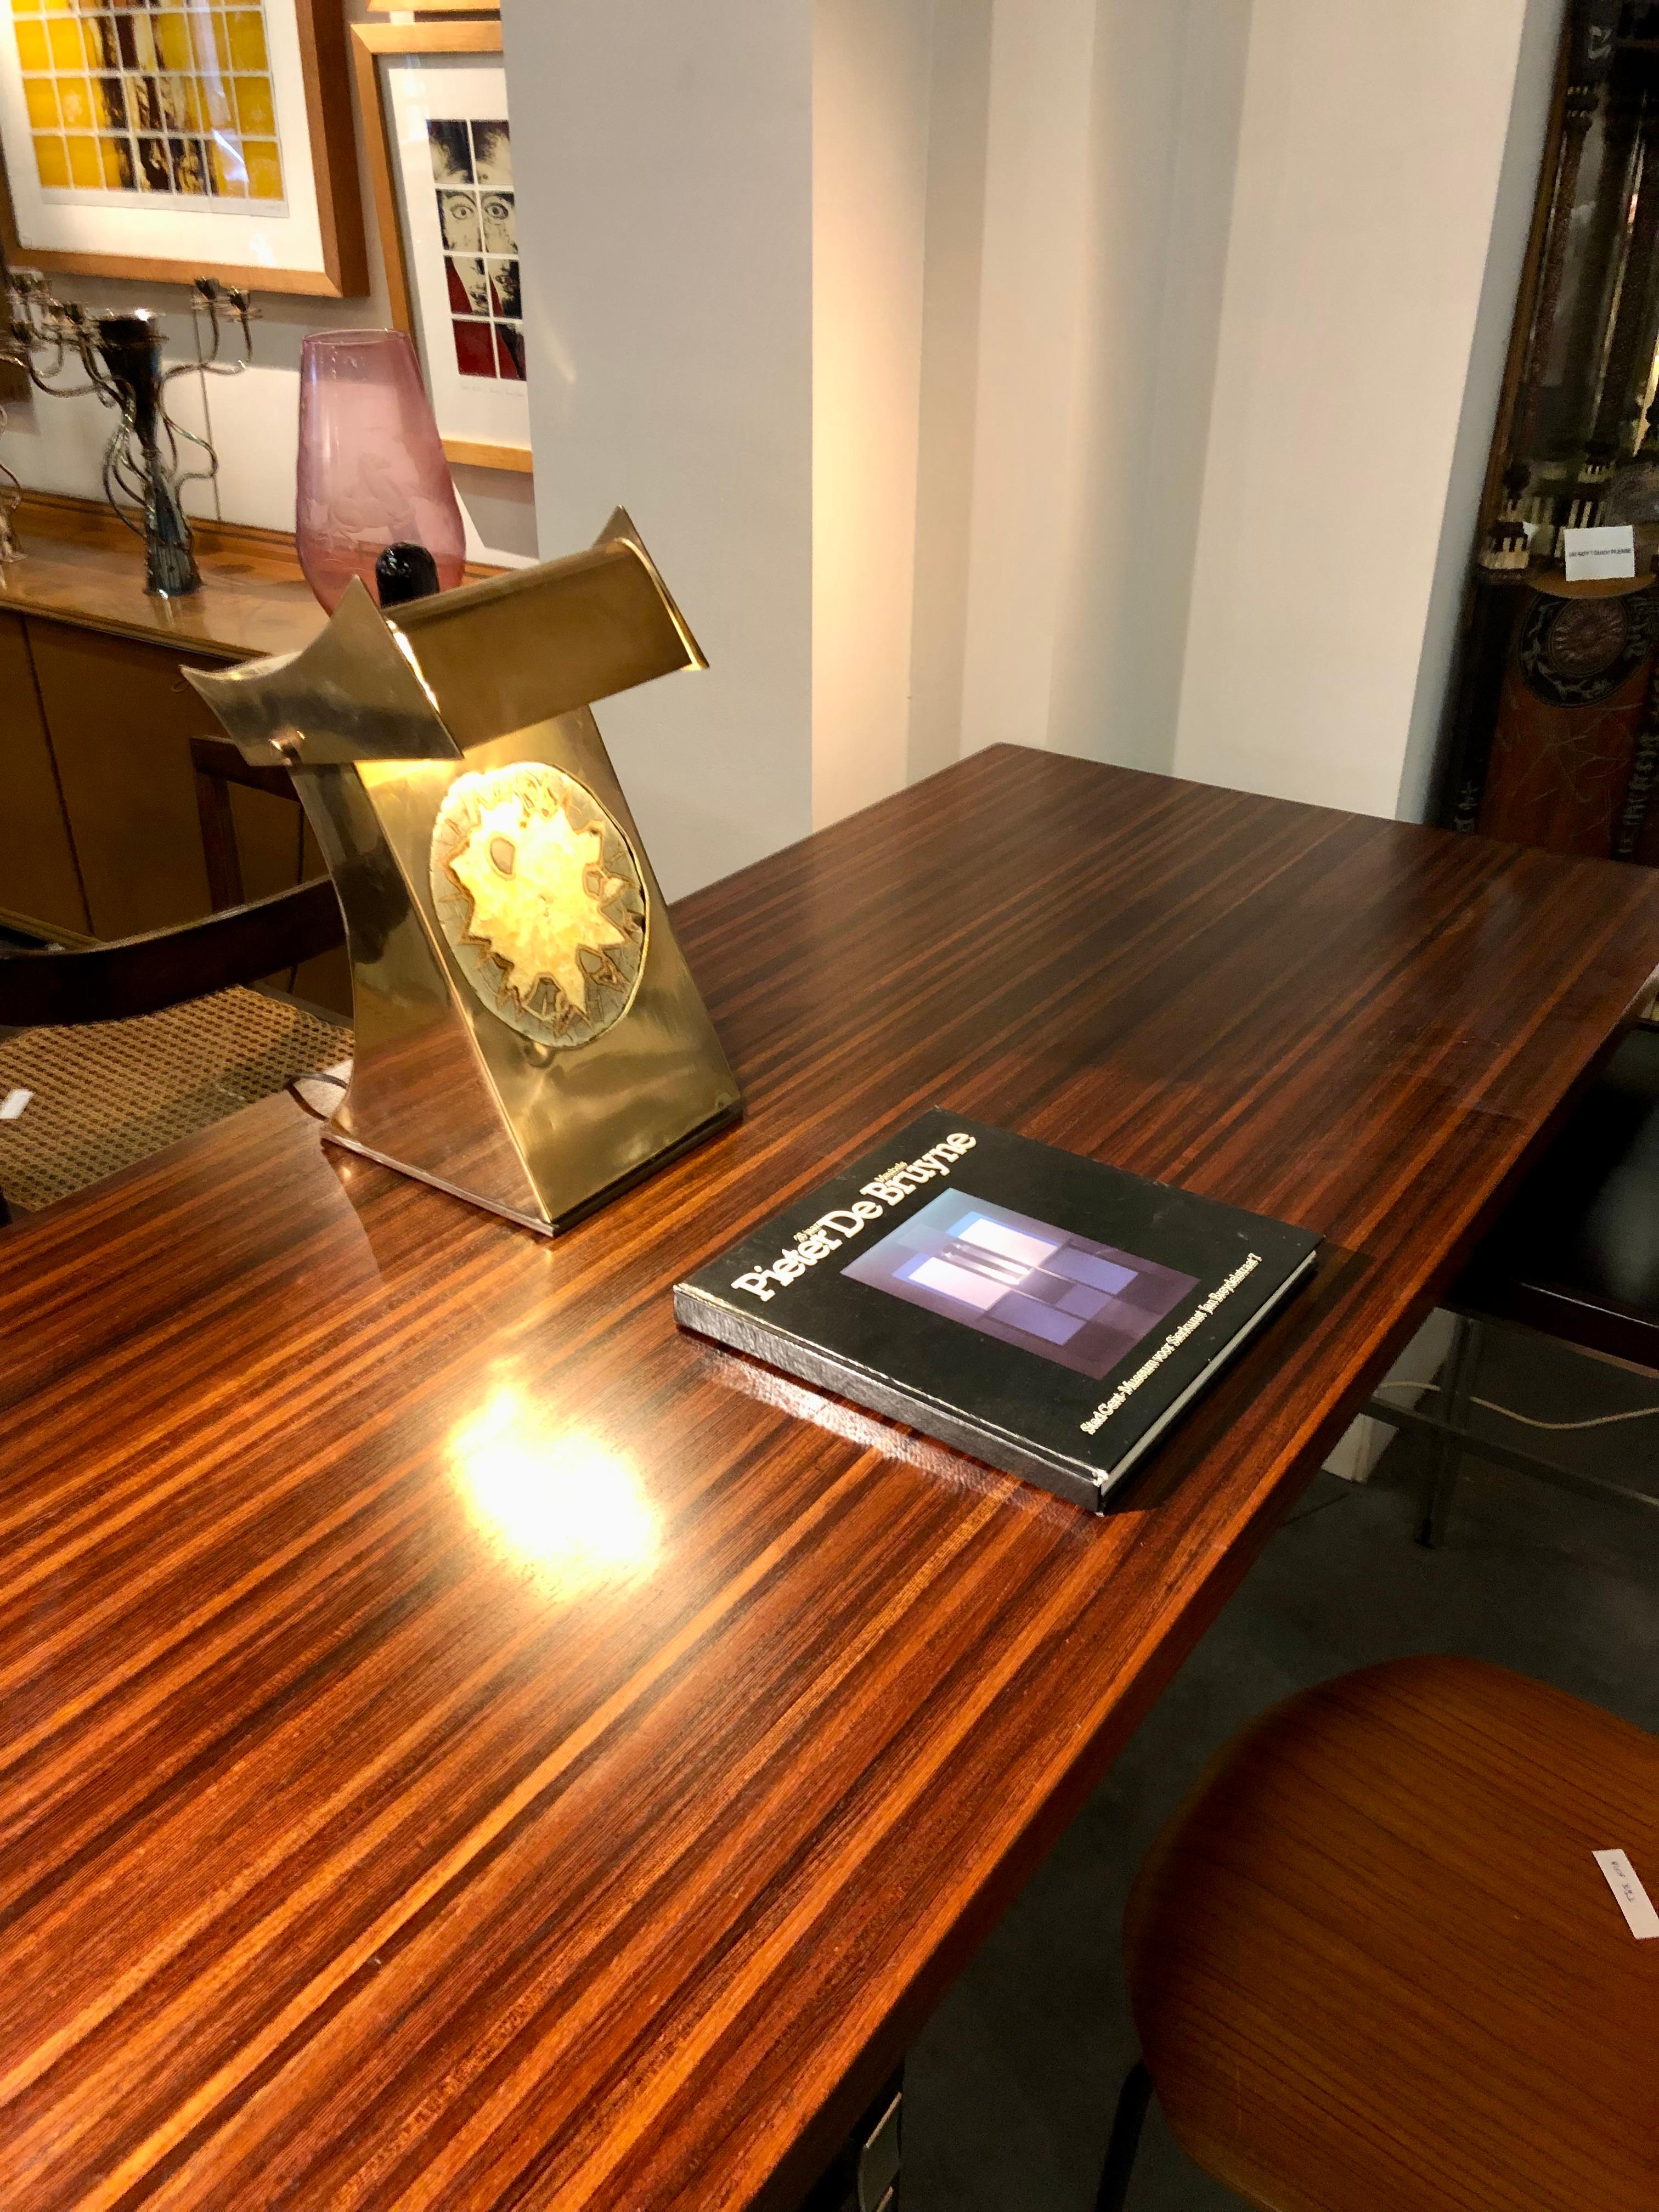 Sehr seltene Tisch- oder Schreibtischlampe aus Kupfer mit Sandstein.
Sehr gute Verarbeitungsqualität und wahrscheinlich nur in einem Exemplar hergestellt.
Das System des Ein-/Ausschaltens ist spezifisch, da man auf den oberen Teil der Lampe drücken